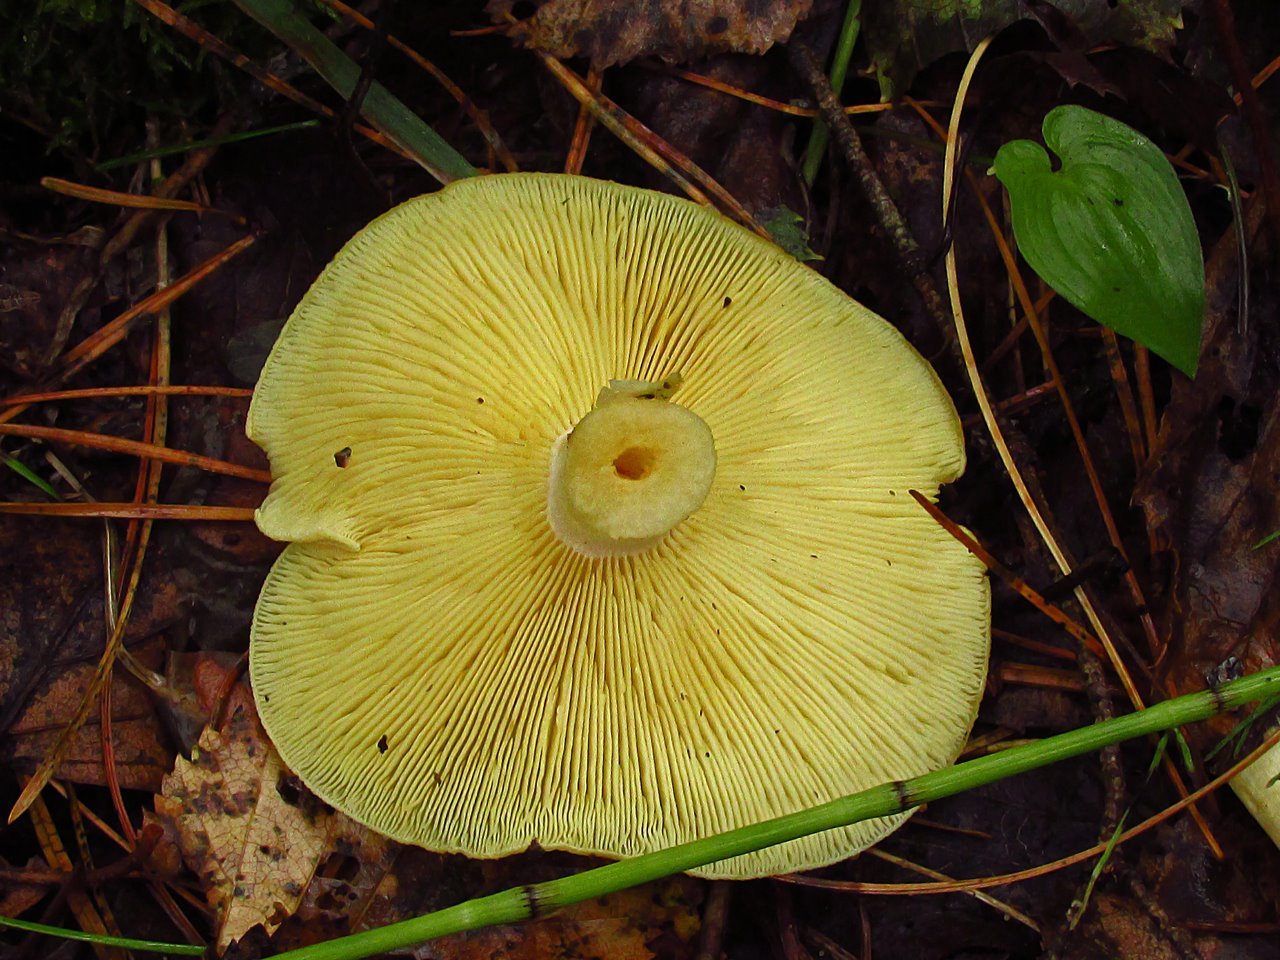 Большие пластинчатые грибы. Желтый гриб пластинчатый гриб?. Желтые пластинчатые грибы. Гриб с желтыми пластинками под шляпкой. Пластинчатый гриб желтого цвета.